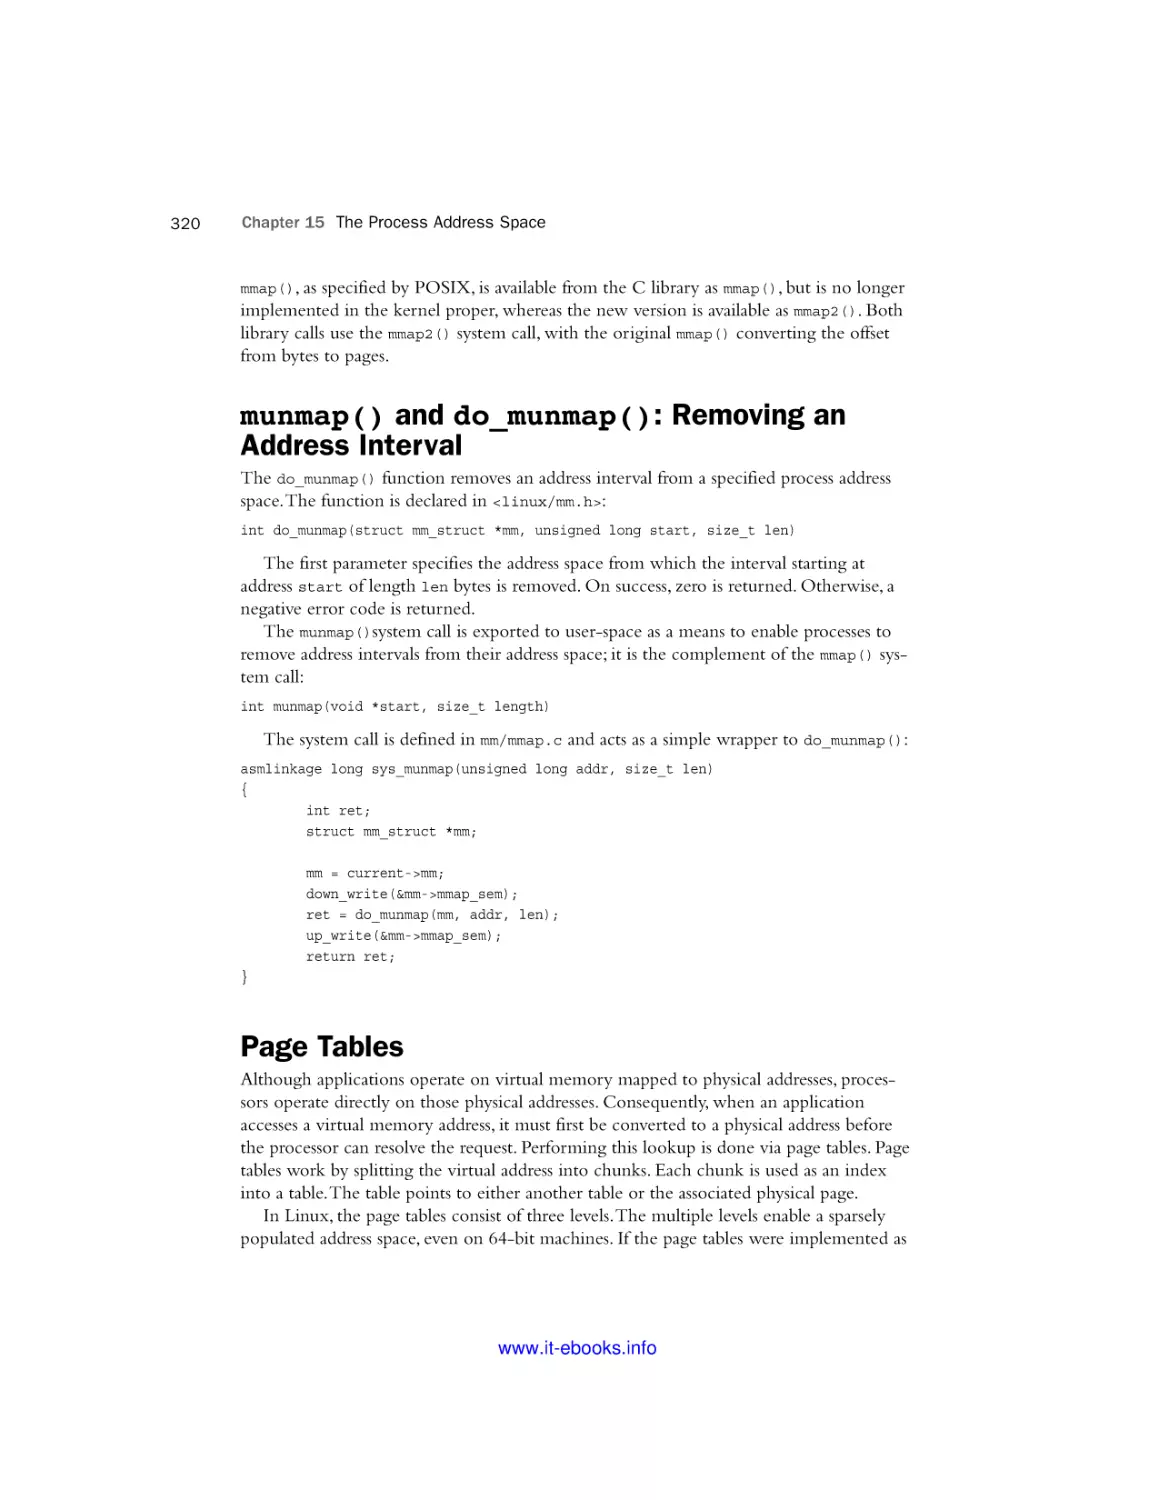 munmap() and do_munmap()
Page Tables